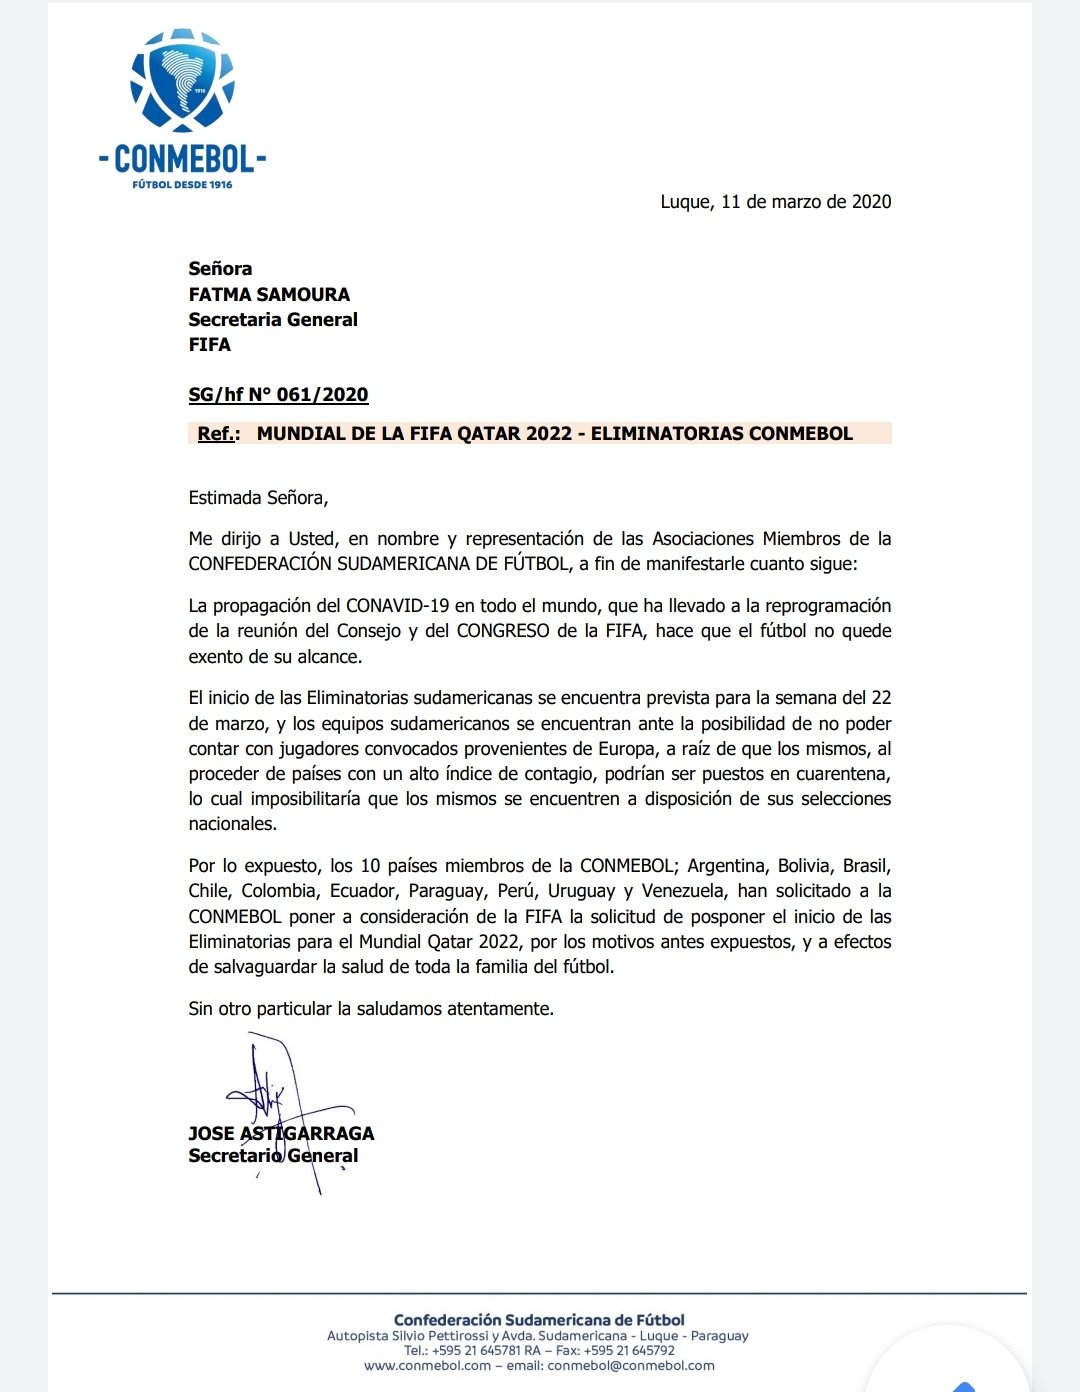 Comunicado oficial de la Conmebol dirigido a la FIFA.